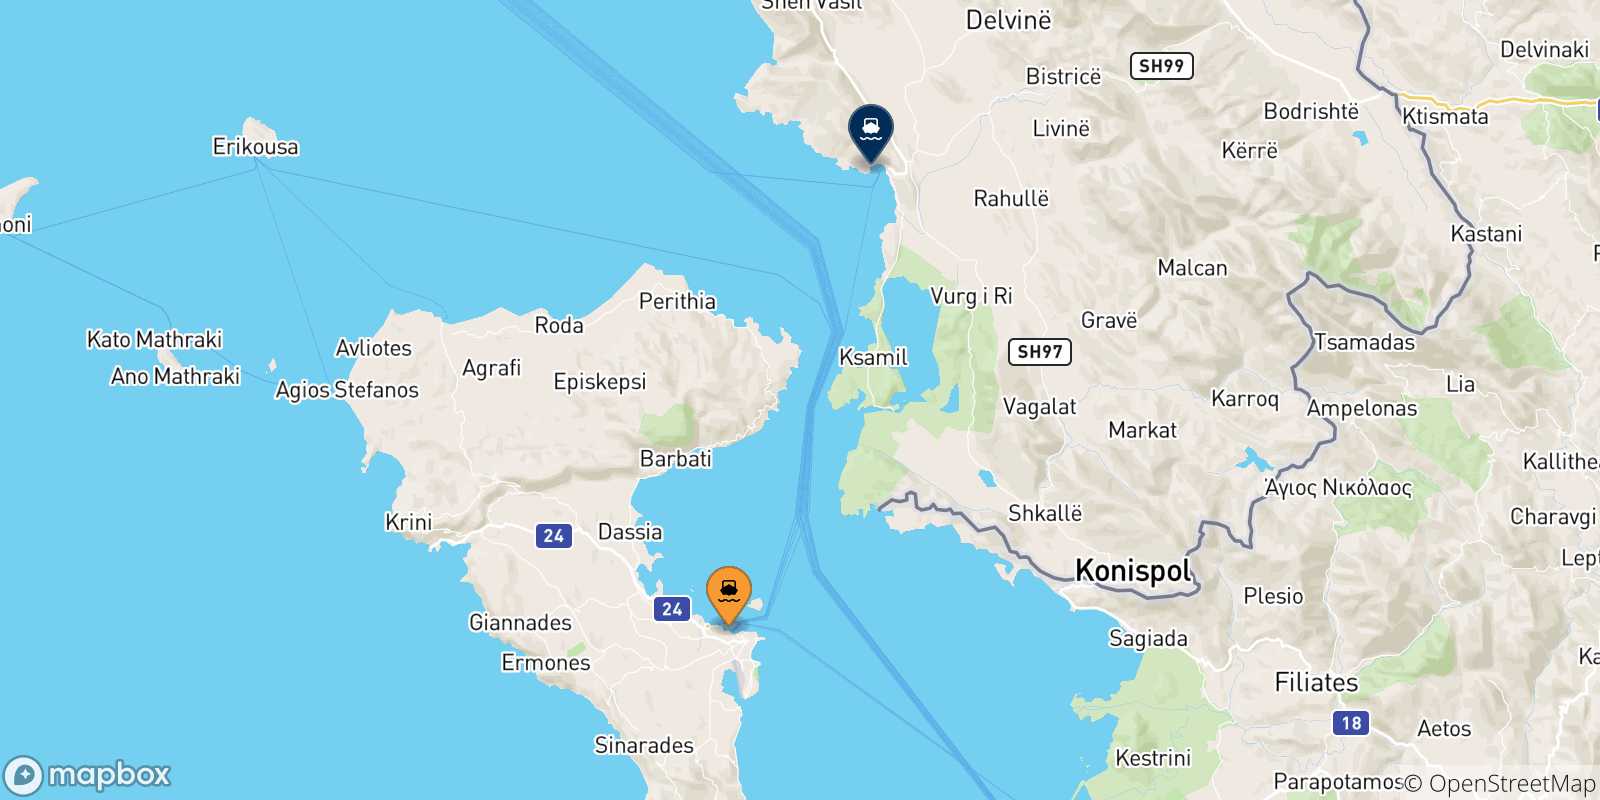 Mappa delle possibili rotte tra la Grecia e l'Albania